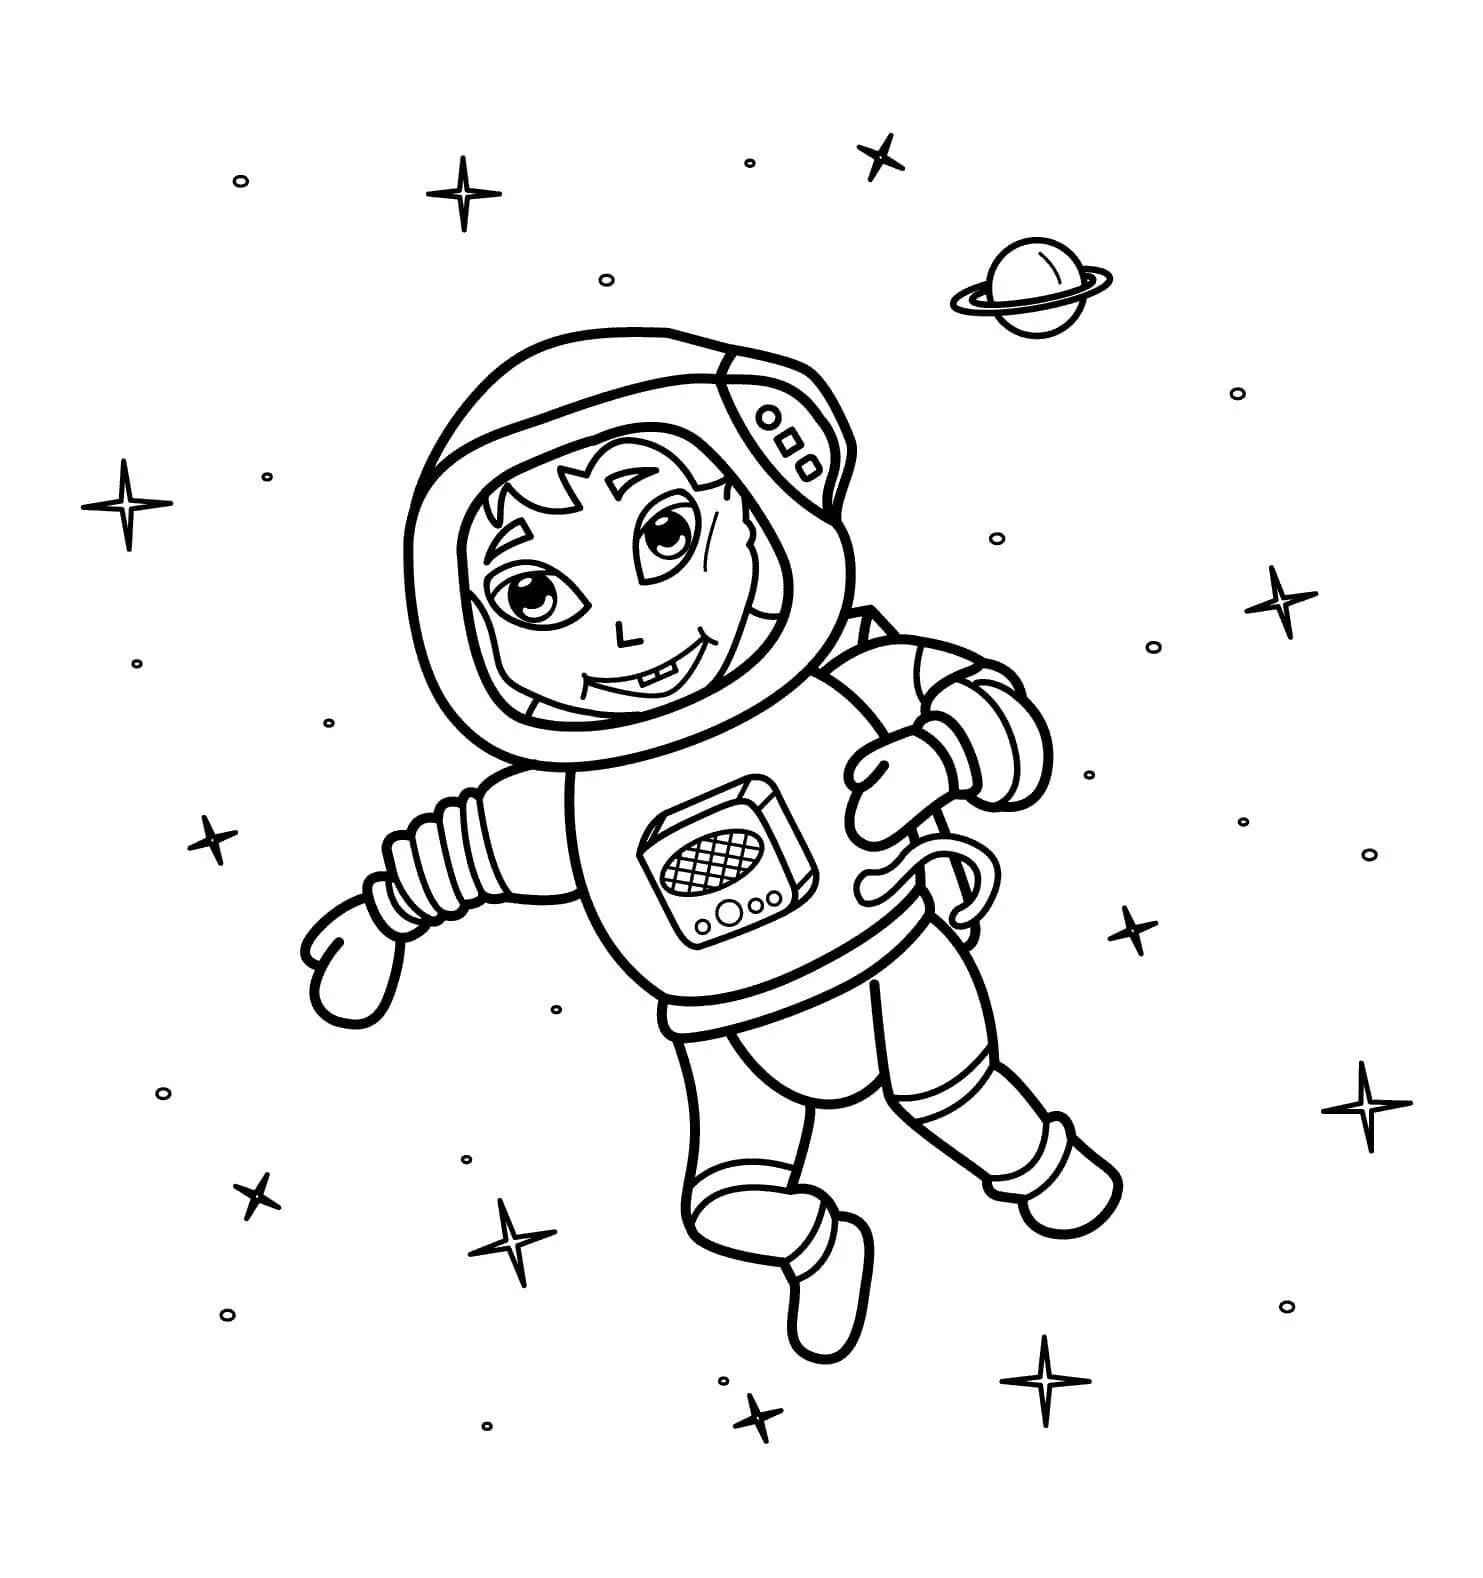 Космонавт раскраска для детей. Космос раскраска для детей. Раскраска про космос и Космонавтов для детей. Космонавт для раскрашивания для детей. Раскраски космос для малышей